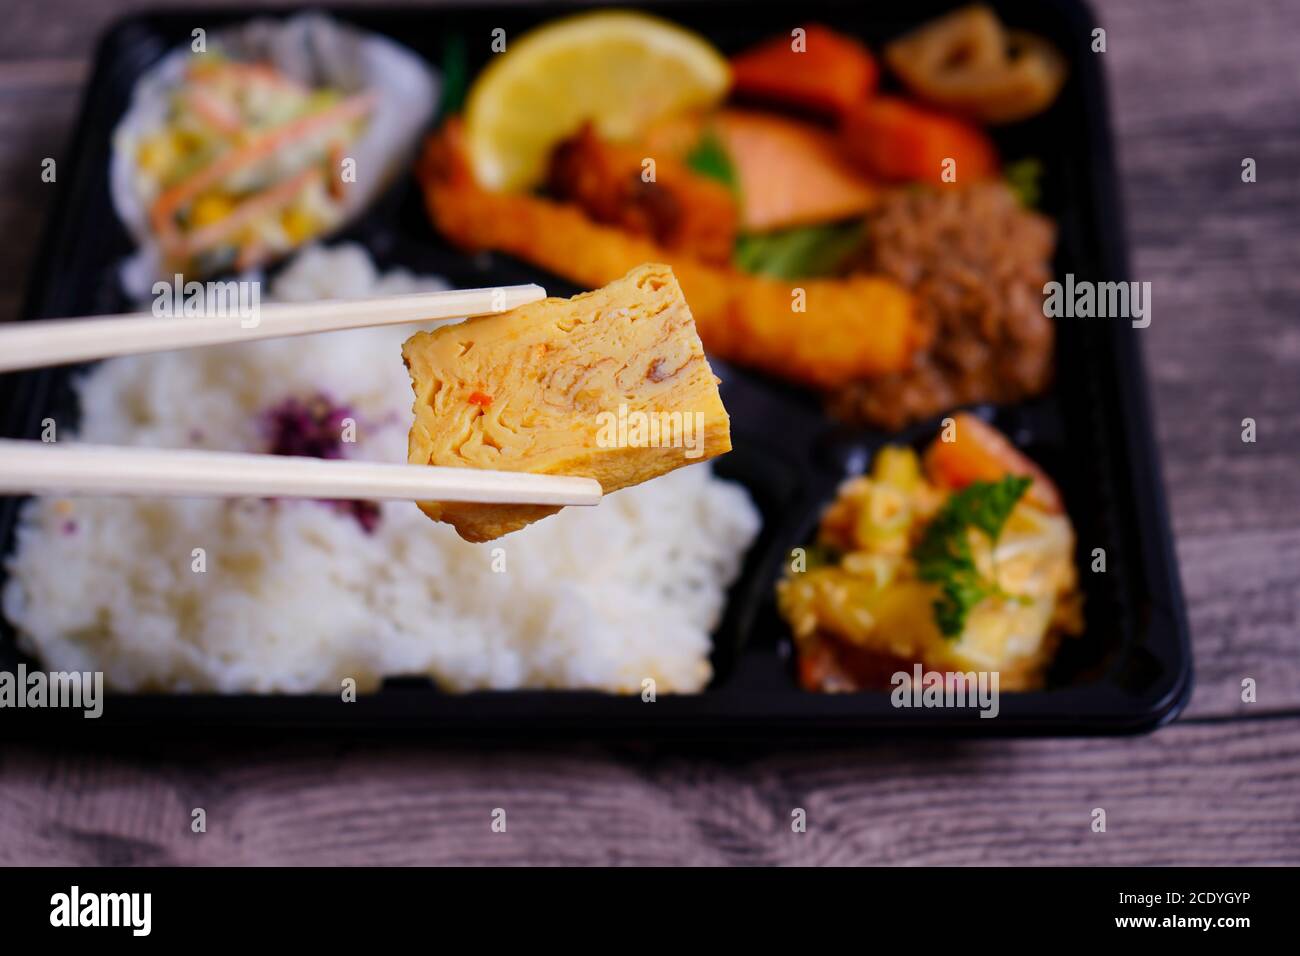 Hölzerne Essstäbchen, die ein saftiges Stück Tofu vor einer verschwommenen japanischen 'Makunouchi' Bento-Box halten. Bento-Boxen sind in Japan sehr beliebt. Stockfoto